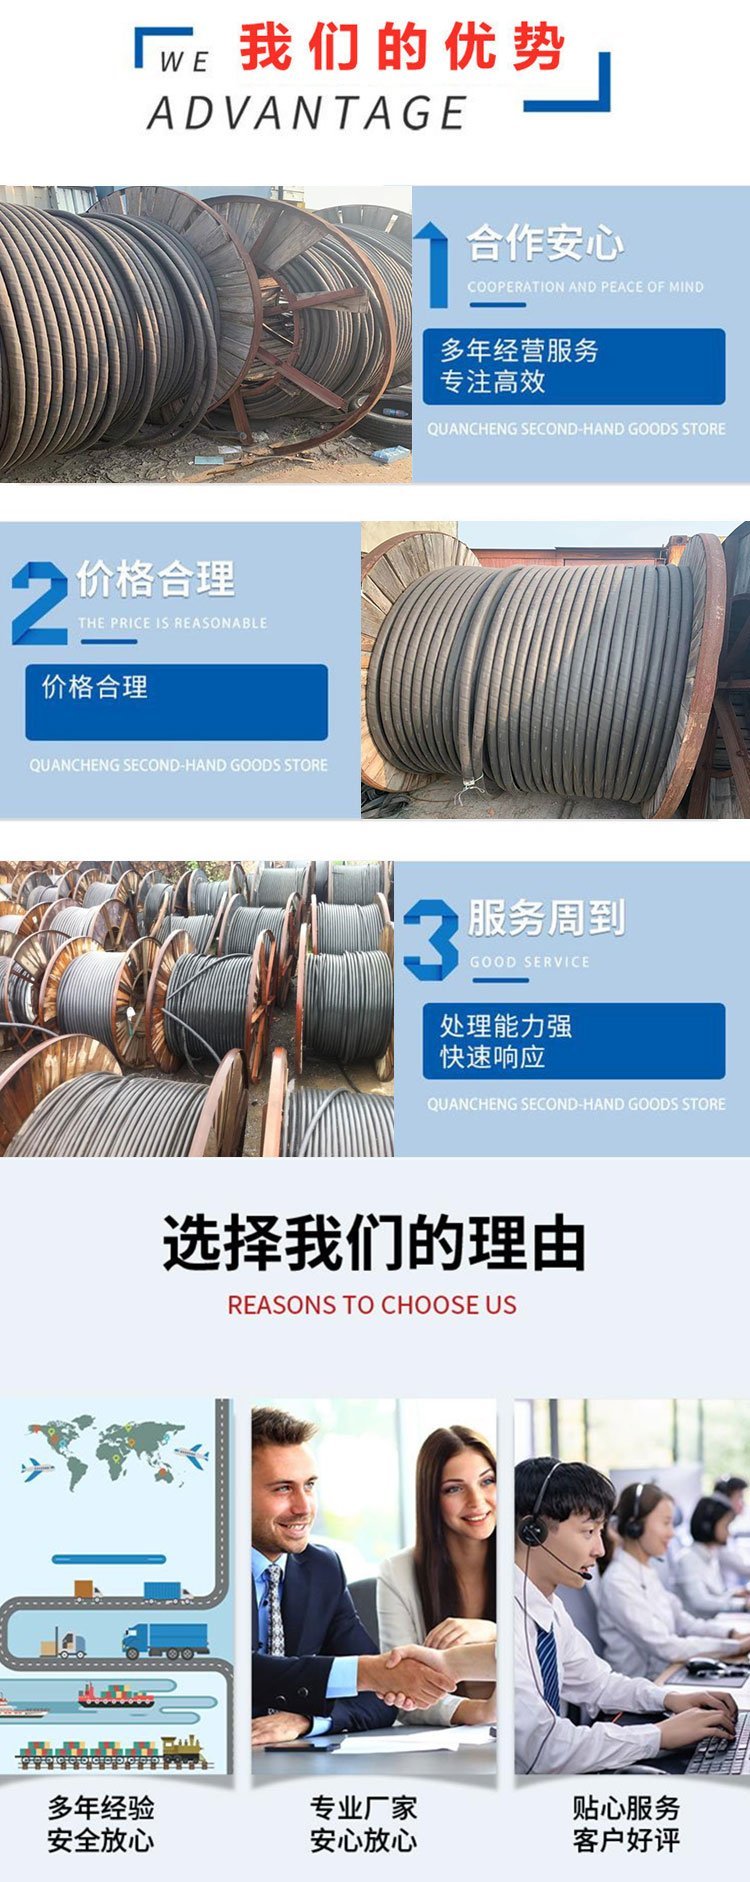 广州海珠预装式临时变压器回收变电房收购商家资质